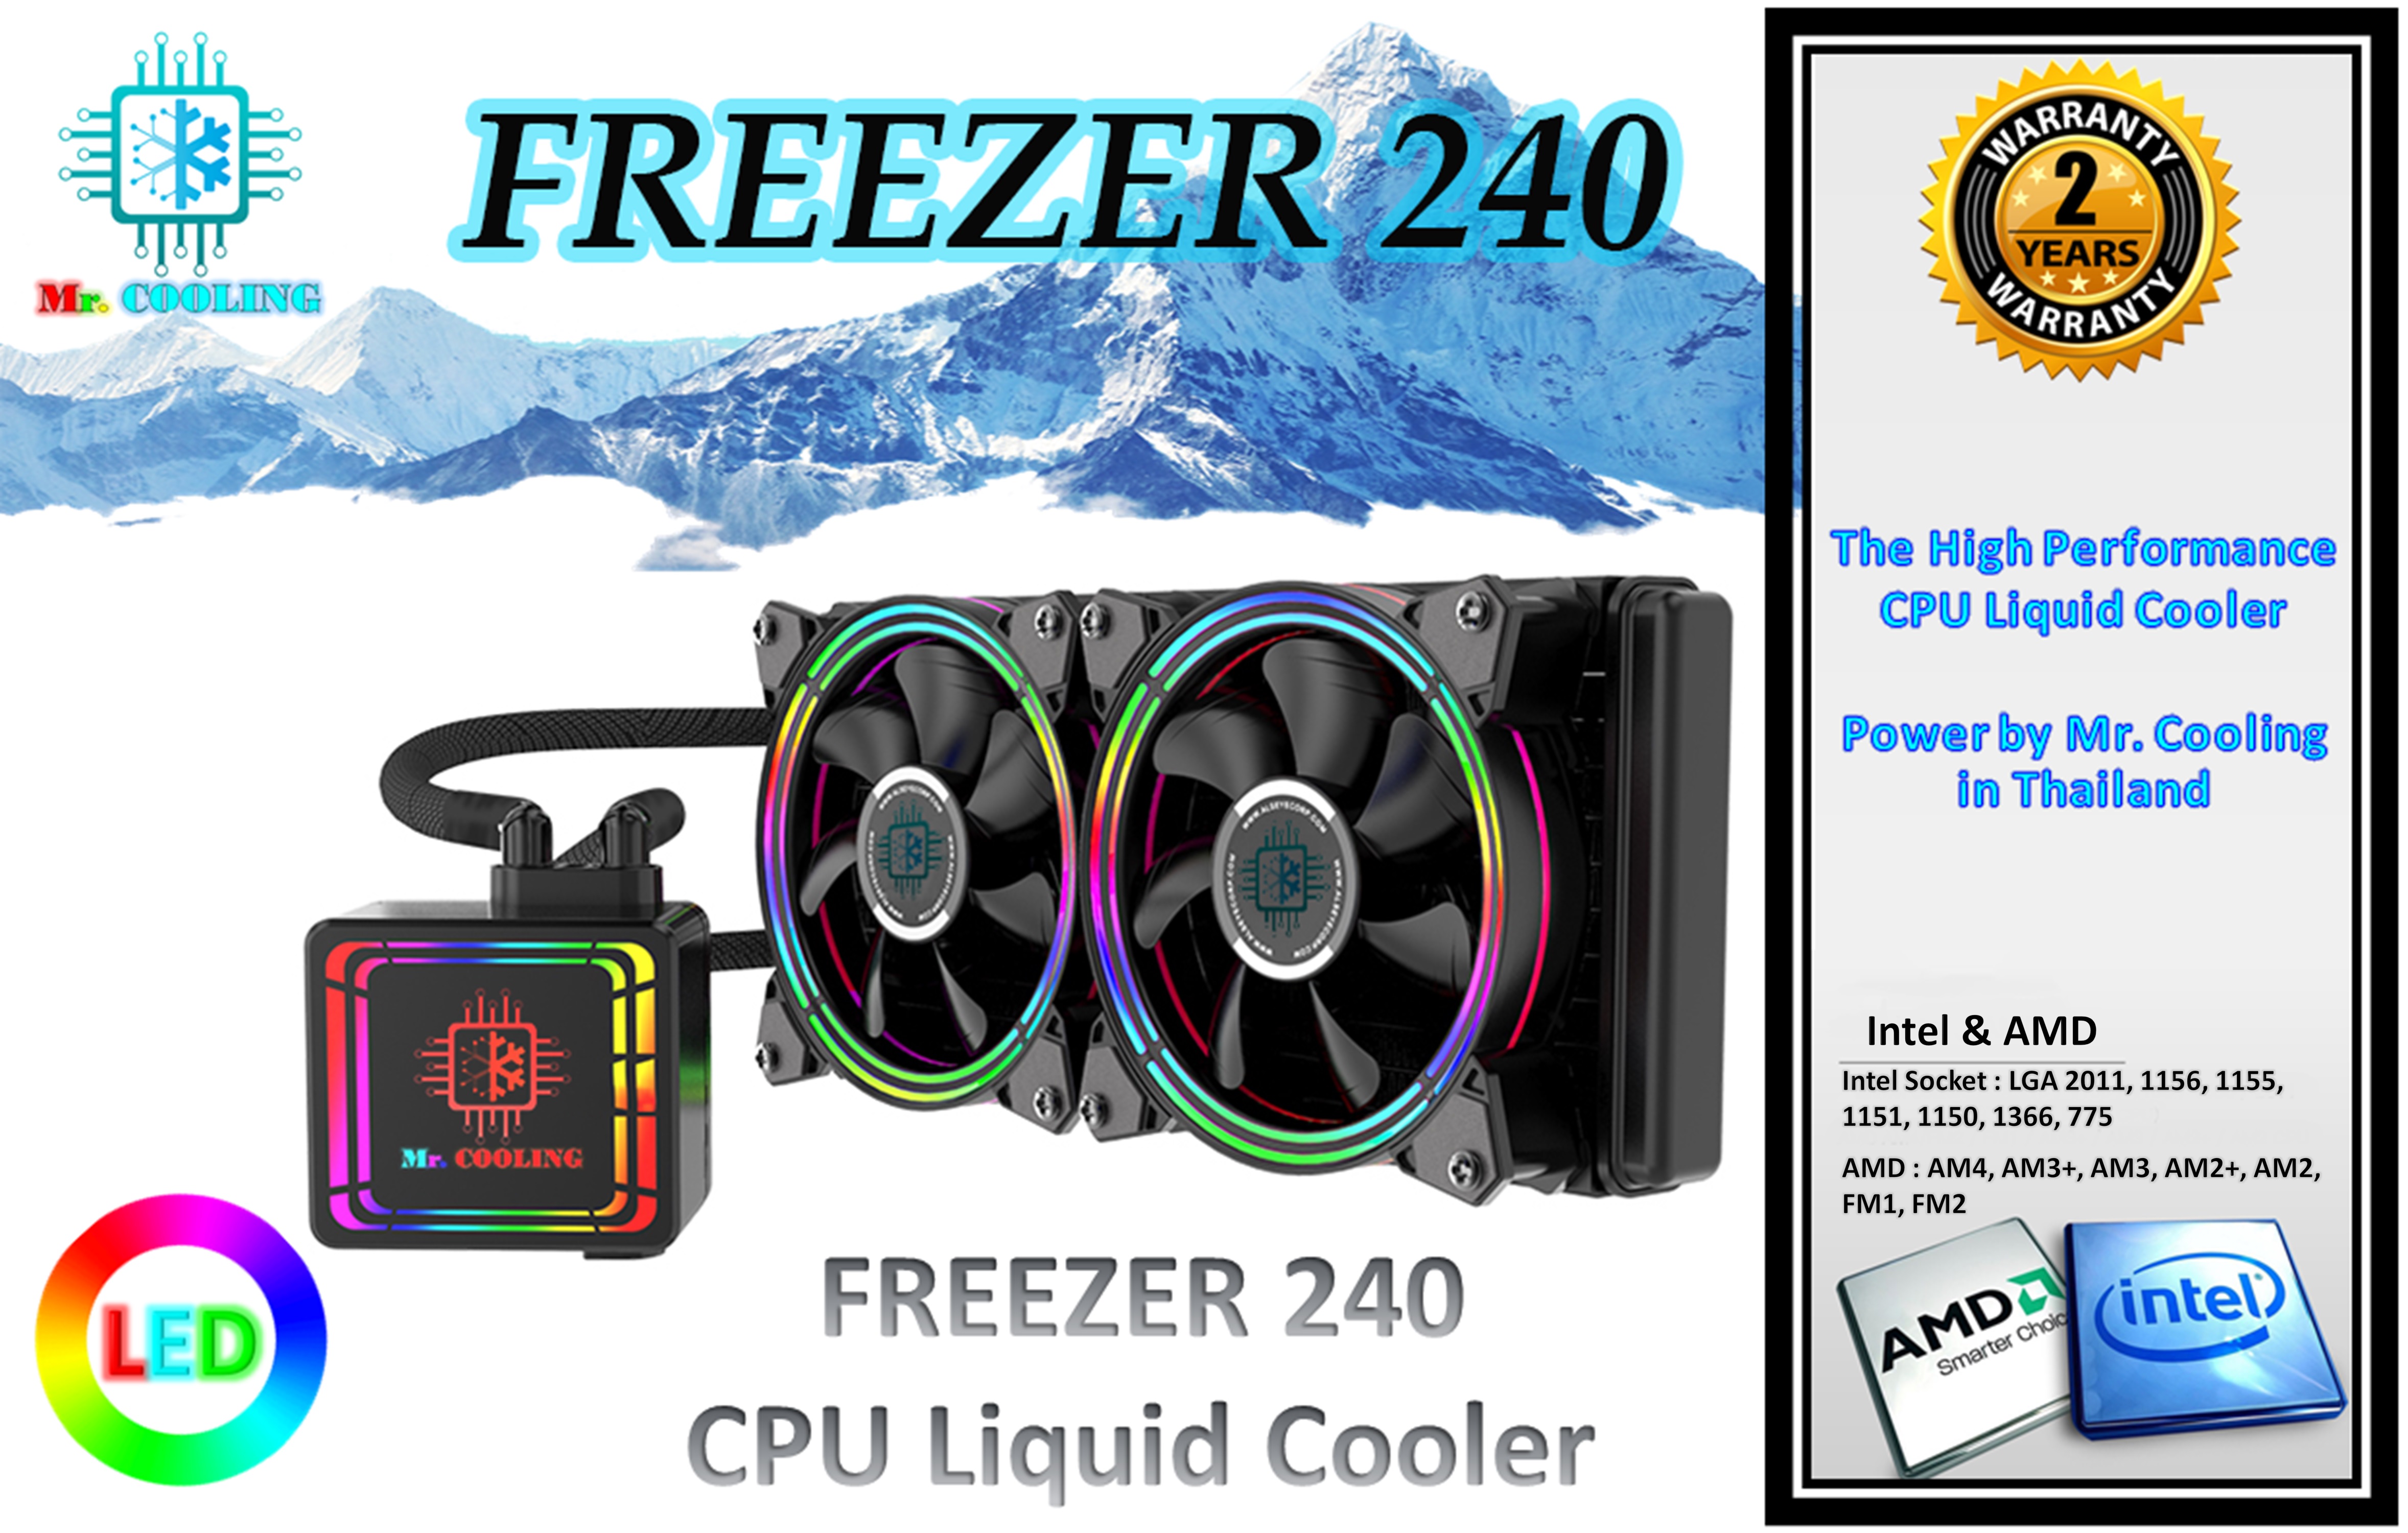 ชุดน้ำปิด2ตอนรุ่น Freezer240 หมดปัญหาCPUร้อน, Freezer Liquid Cooler 240 ใช้ได้ทุกบอร์ดทุกซอคเก็ต